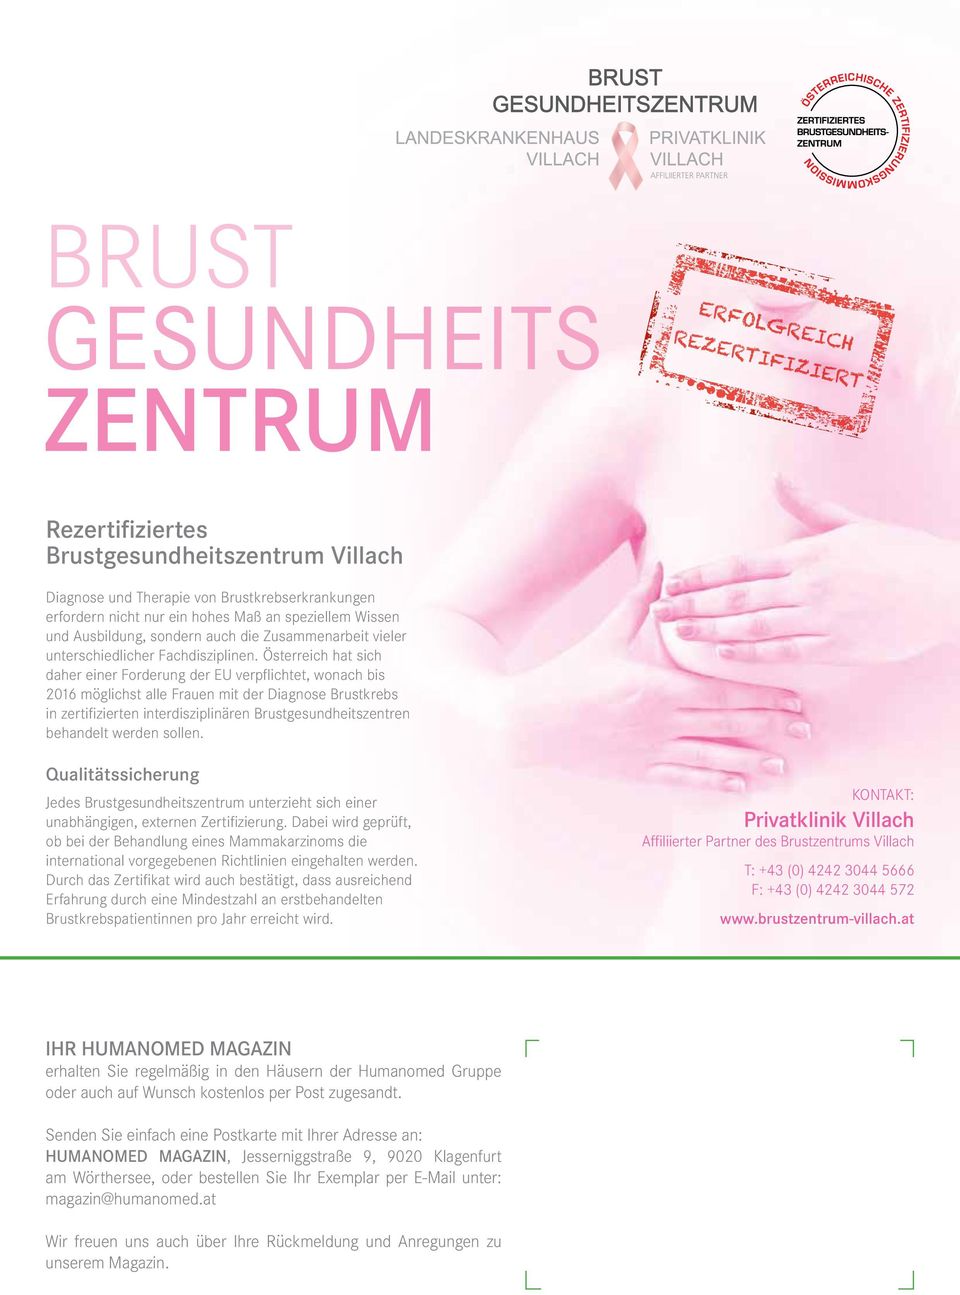 Österreich hat sich daher einer Forderung der EU verpflichtet, wonach bis 2016 möglichst alle Frauen mit der Diagnose Brustkrebs in zertifizierten interdisziplinären Brustgesundheitszentren behandelt